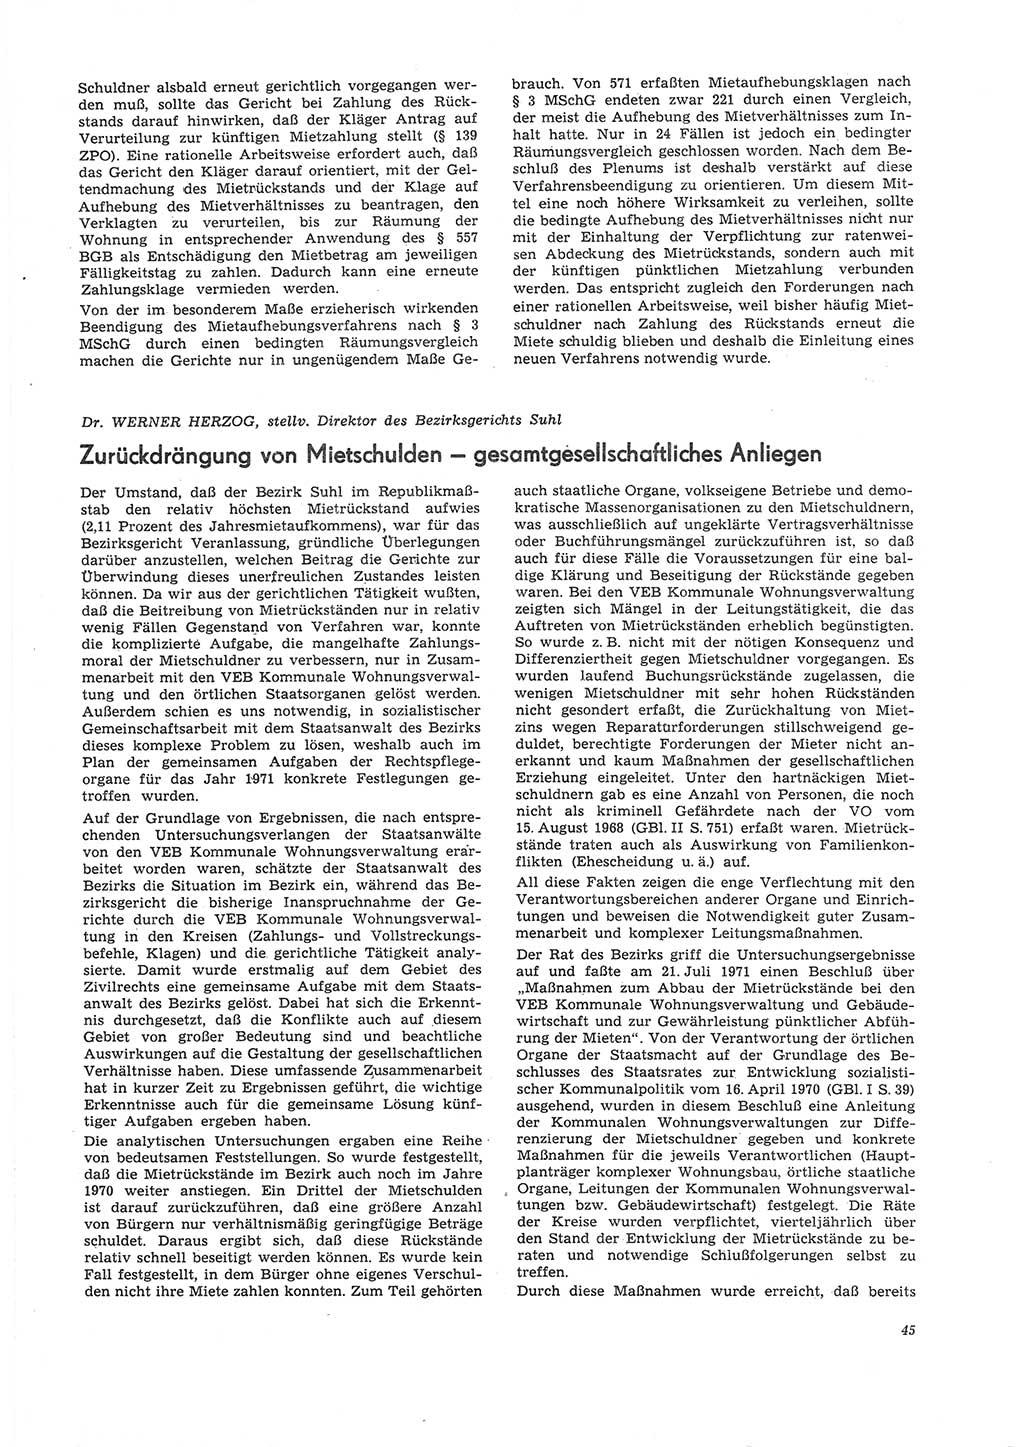 Neue Justiz (NJ), Zeitschrift für Recht und Rechtswissenschaft [Deutsche Demokratische Republik (DDR)], 26. Jahrgang 1972, Seite 45 (NJ DDR 1972, S. 45)